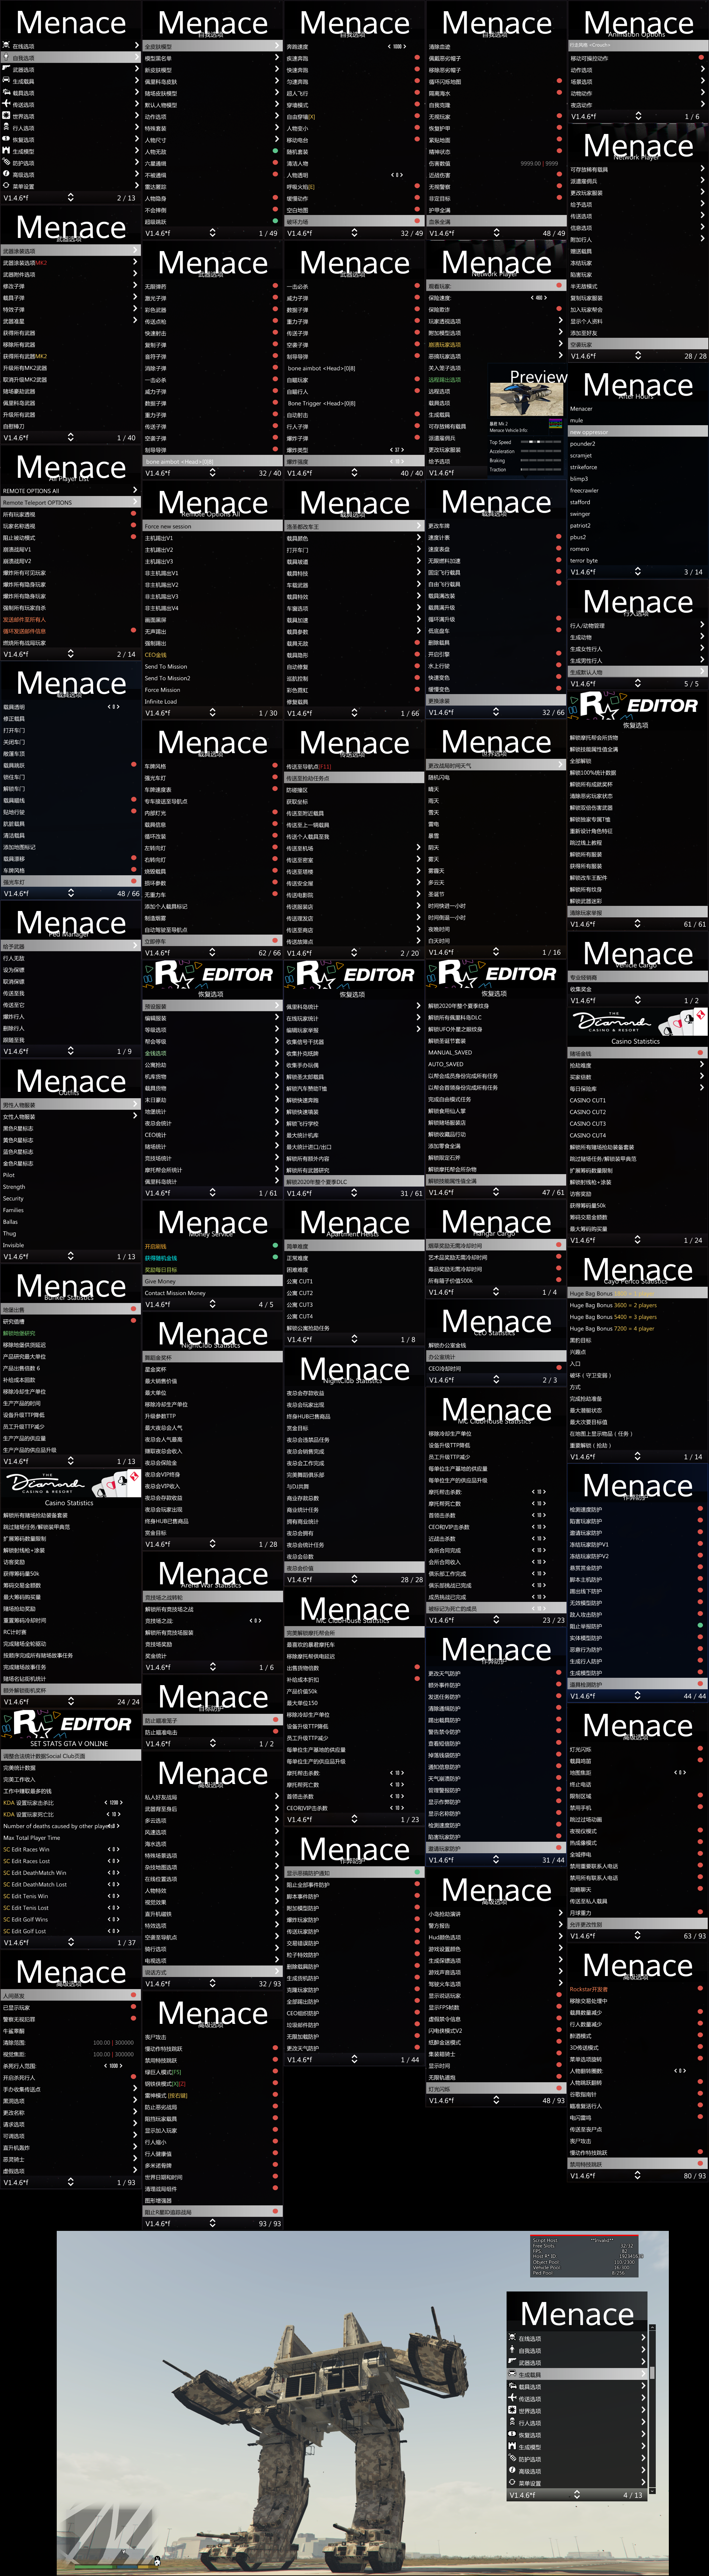 GTA5威胁辅助（Menace）详细功能图片视频介绍